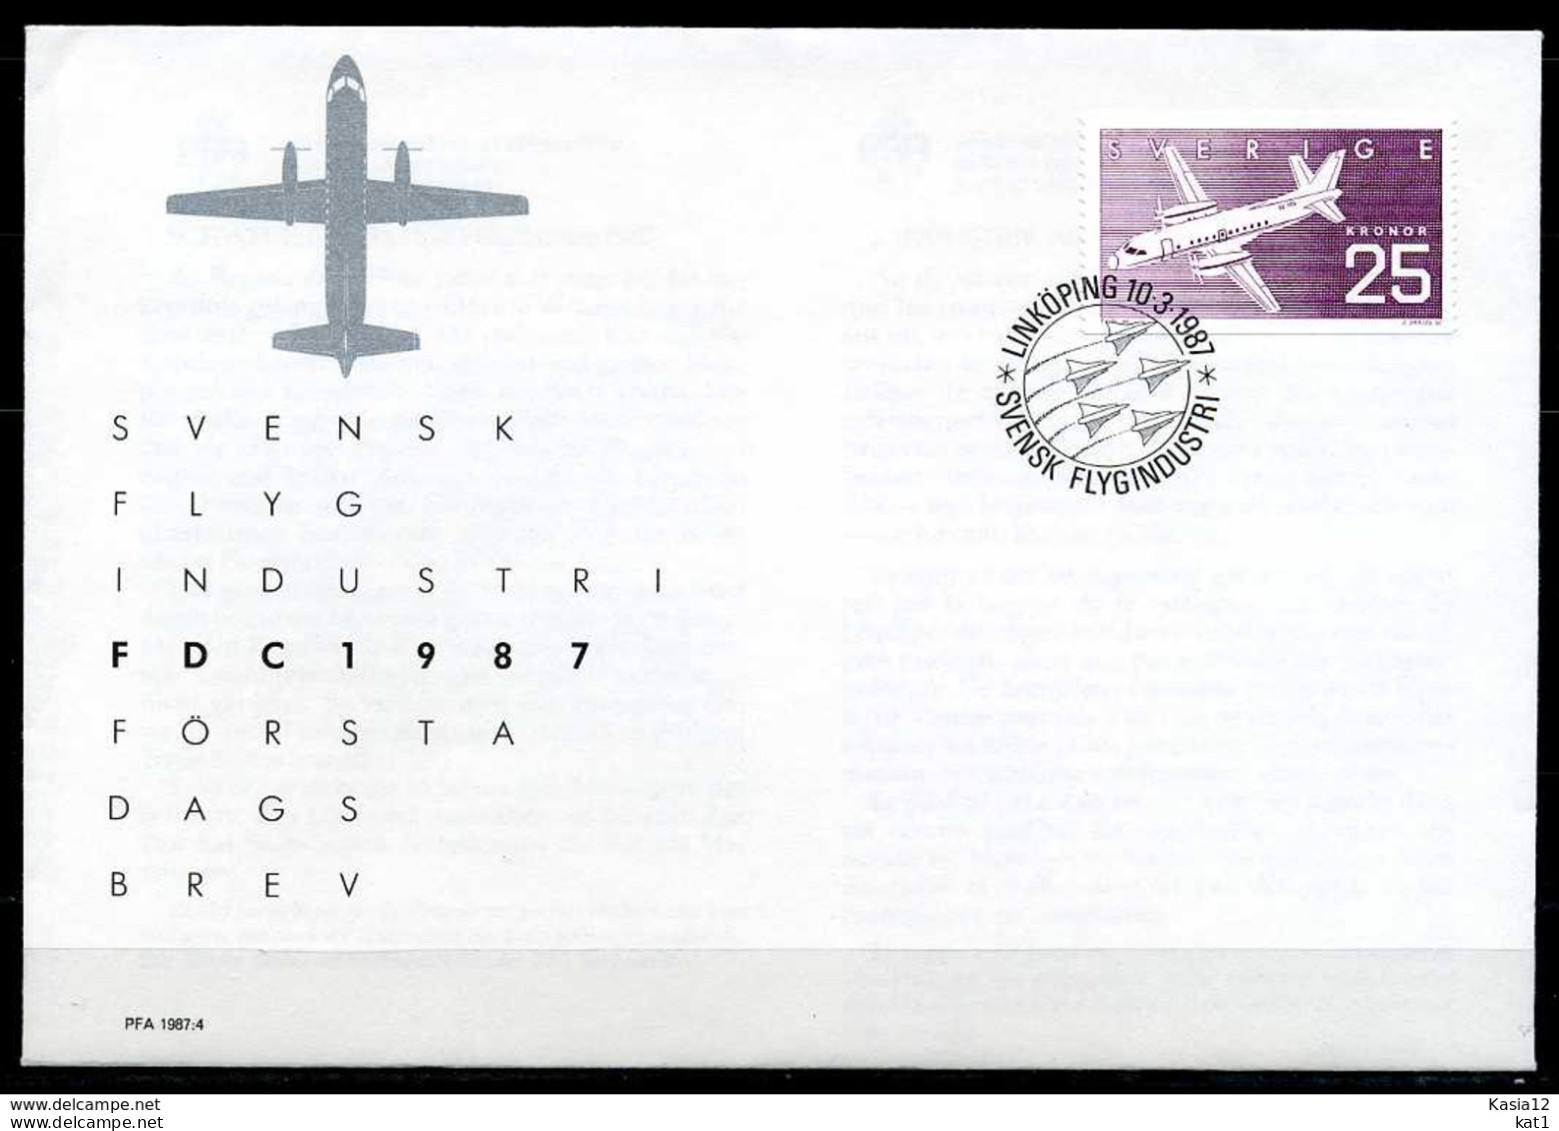 F0767)Schweden FDC 1427 Flugzeug - Briefe U. Dokumente